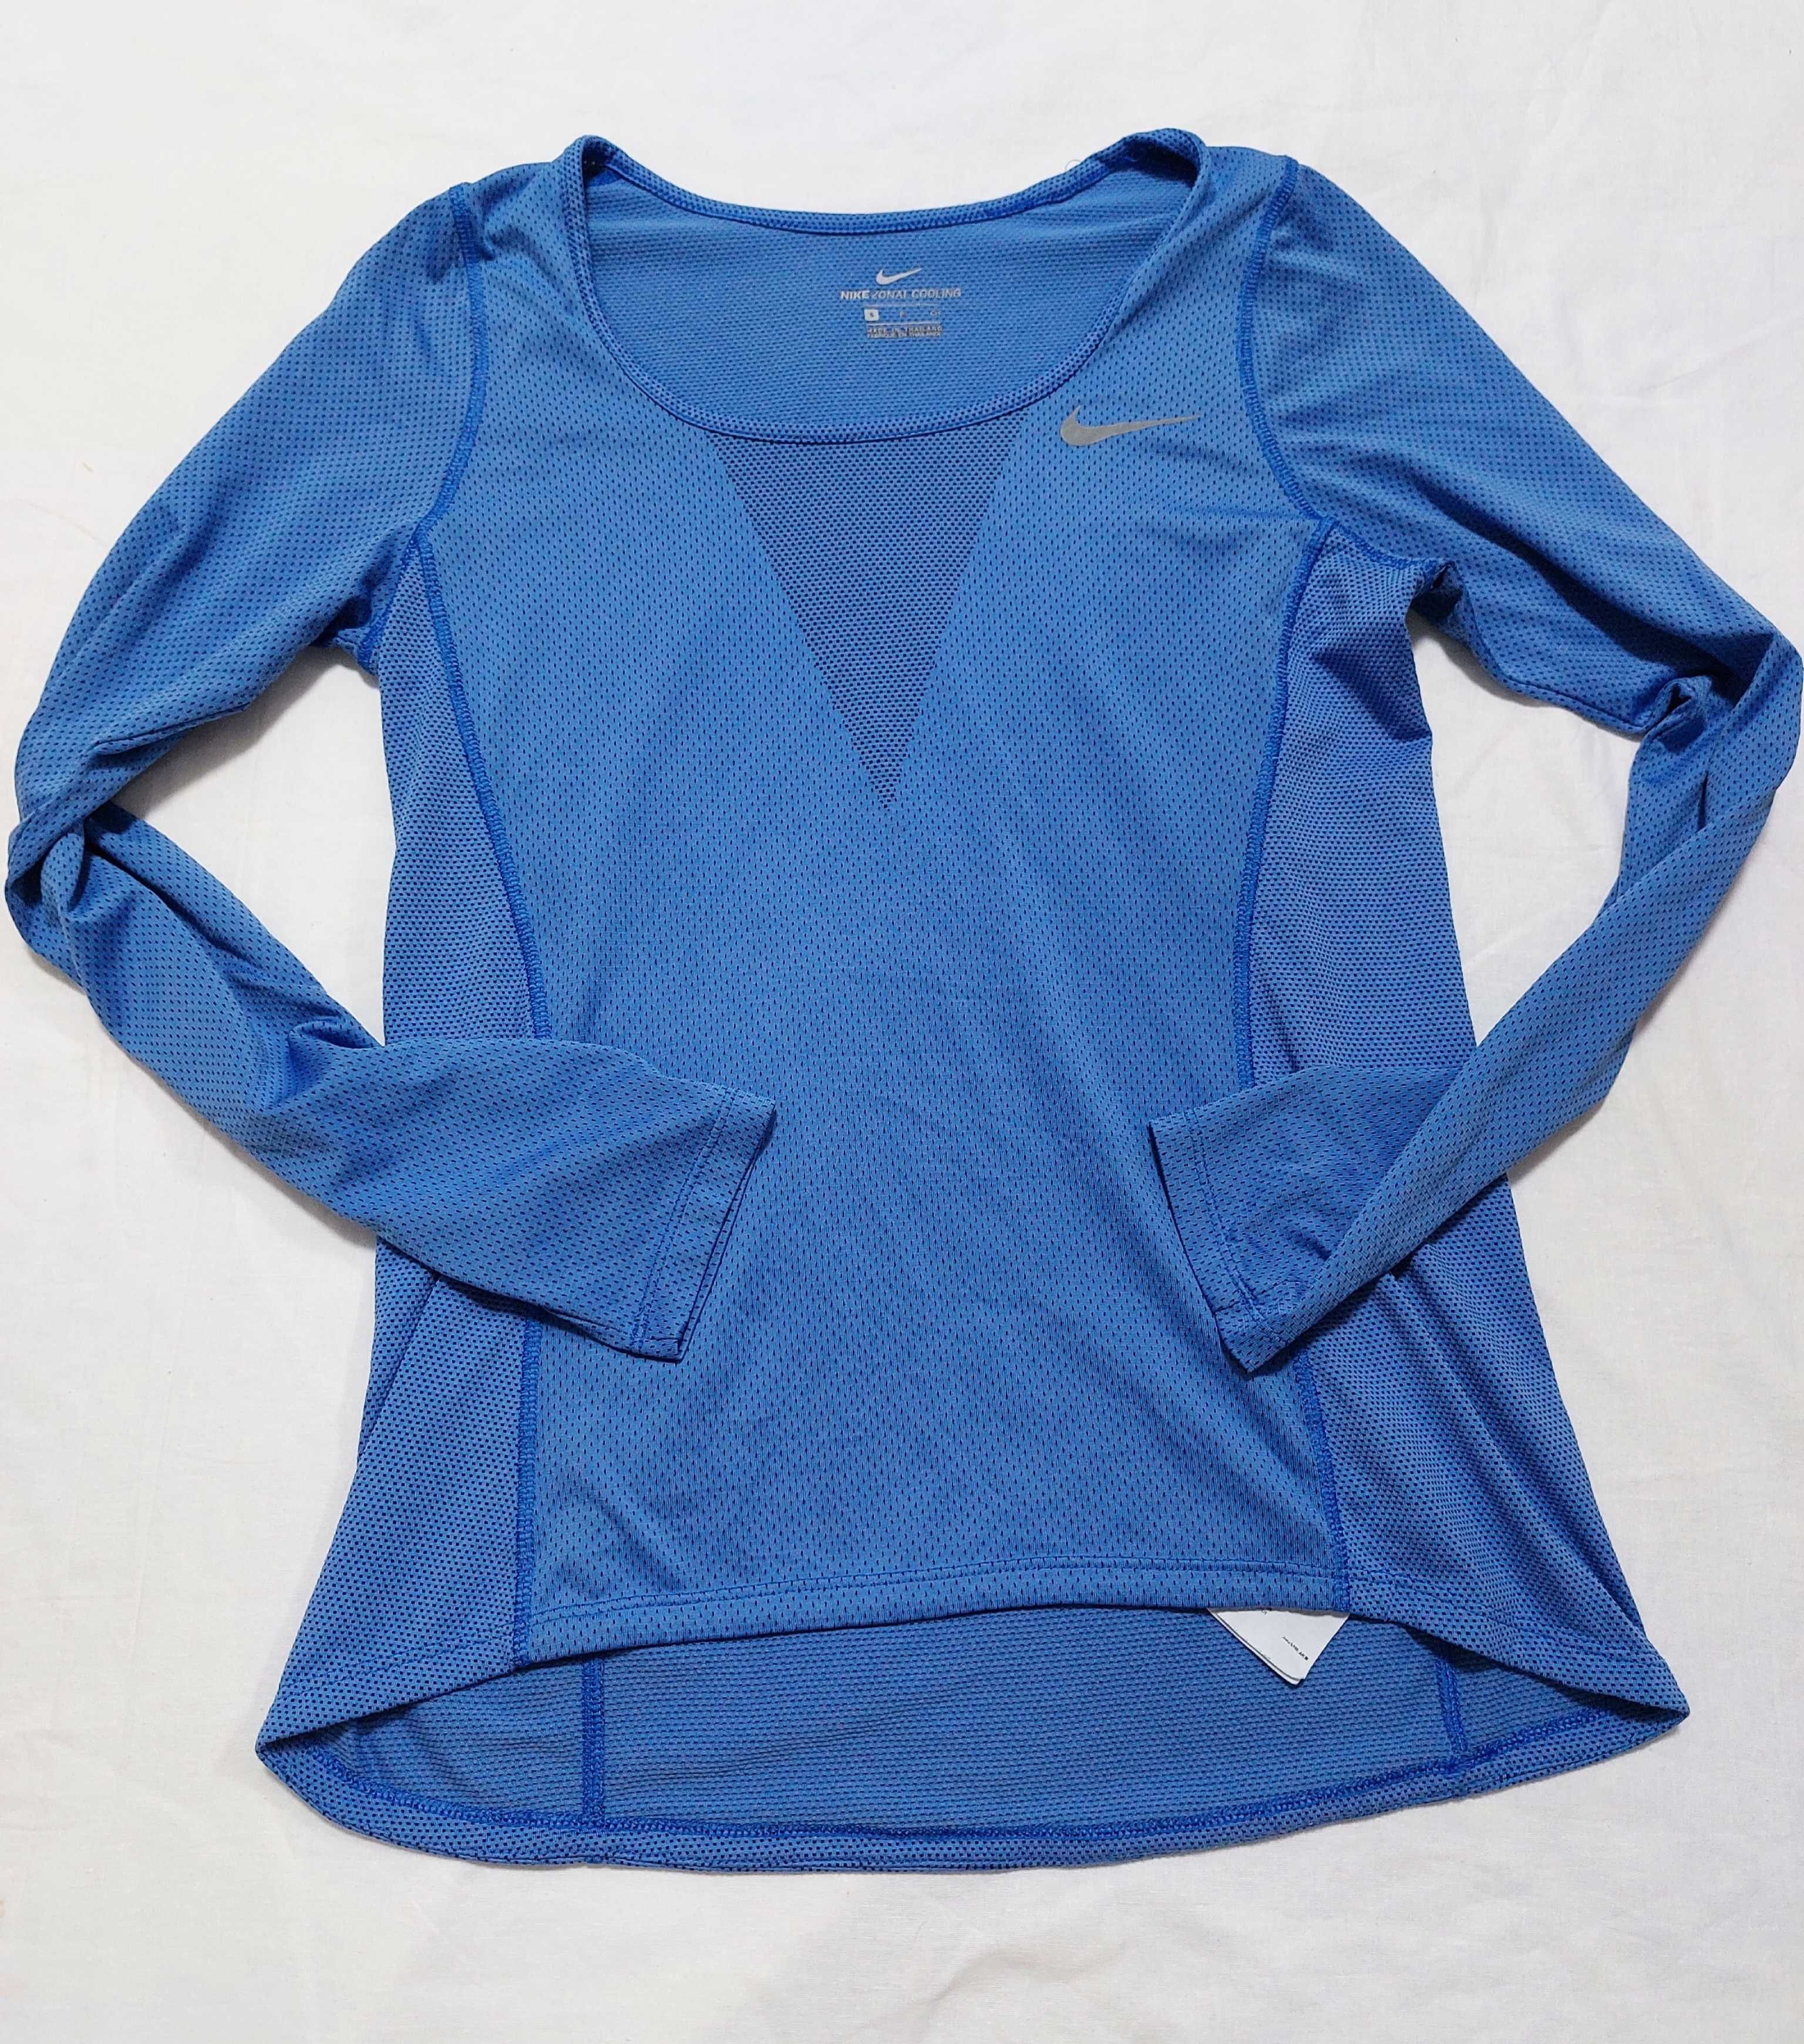 Женская спортивная кофта, лонгслив Nike Zonal Cooling размер М